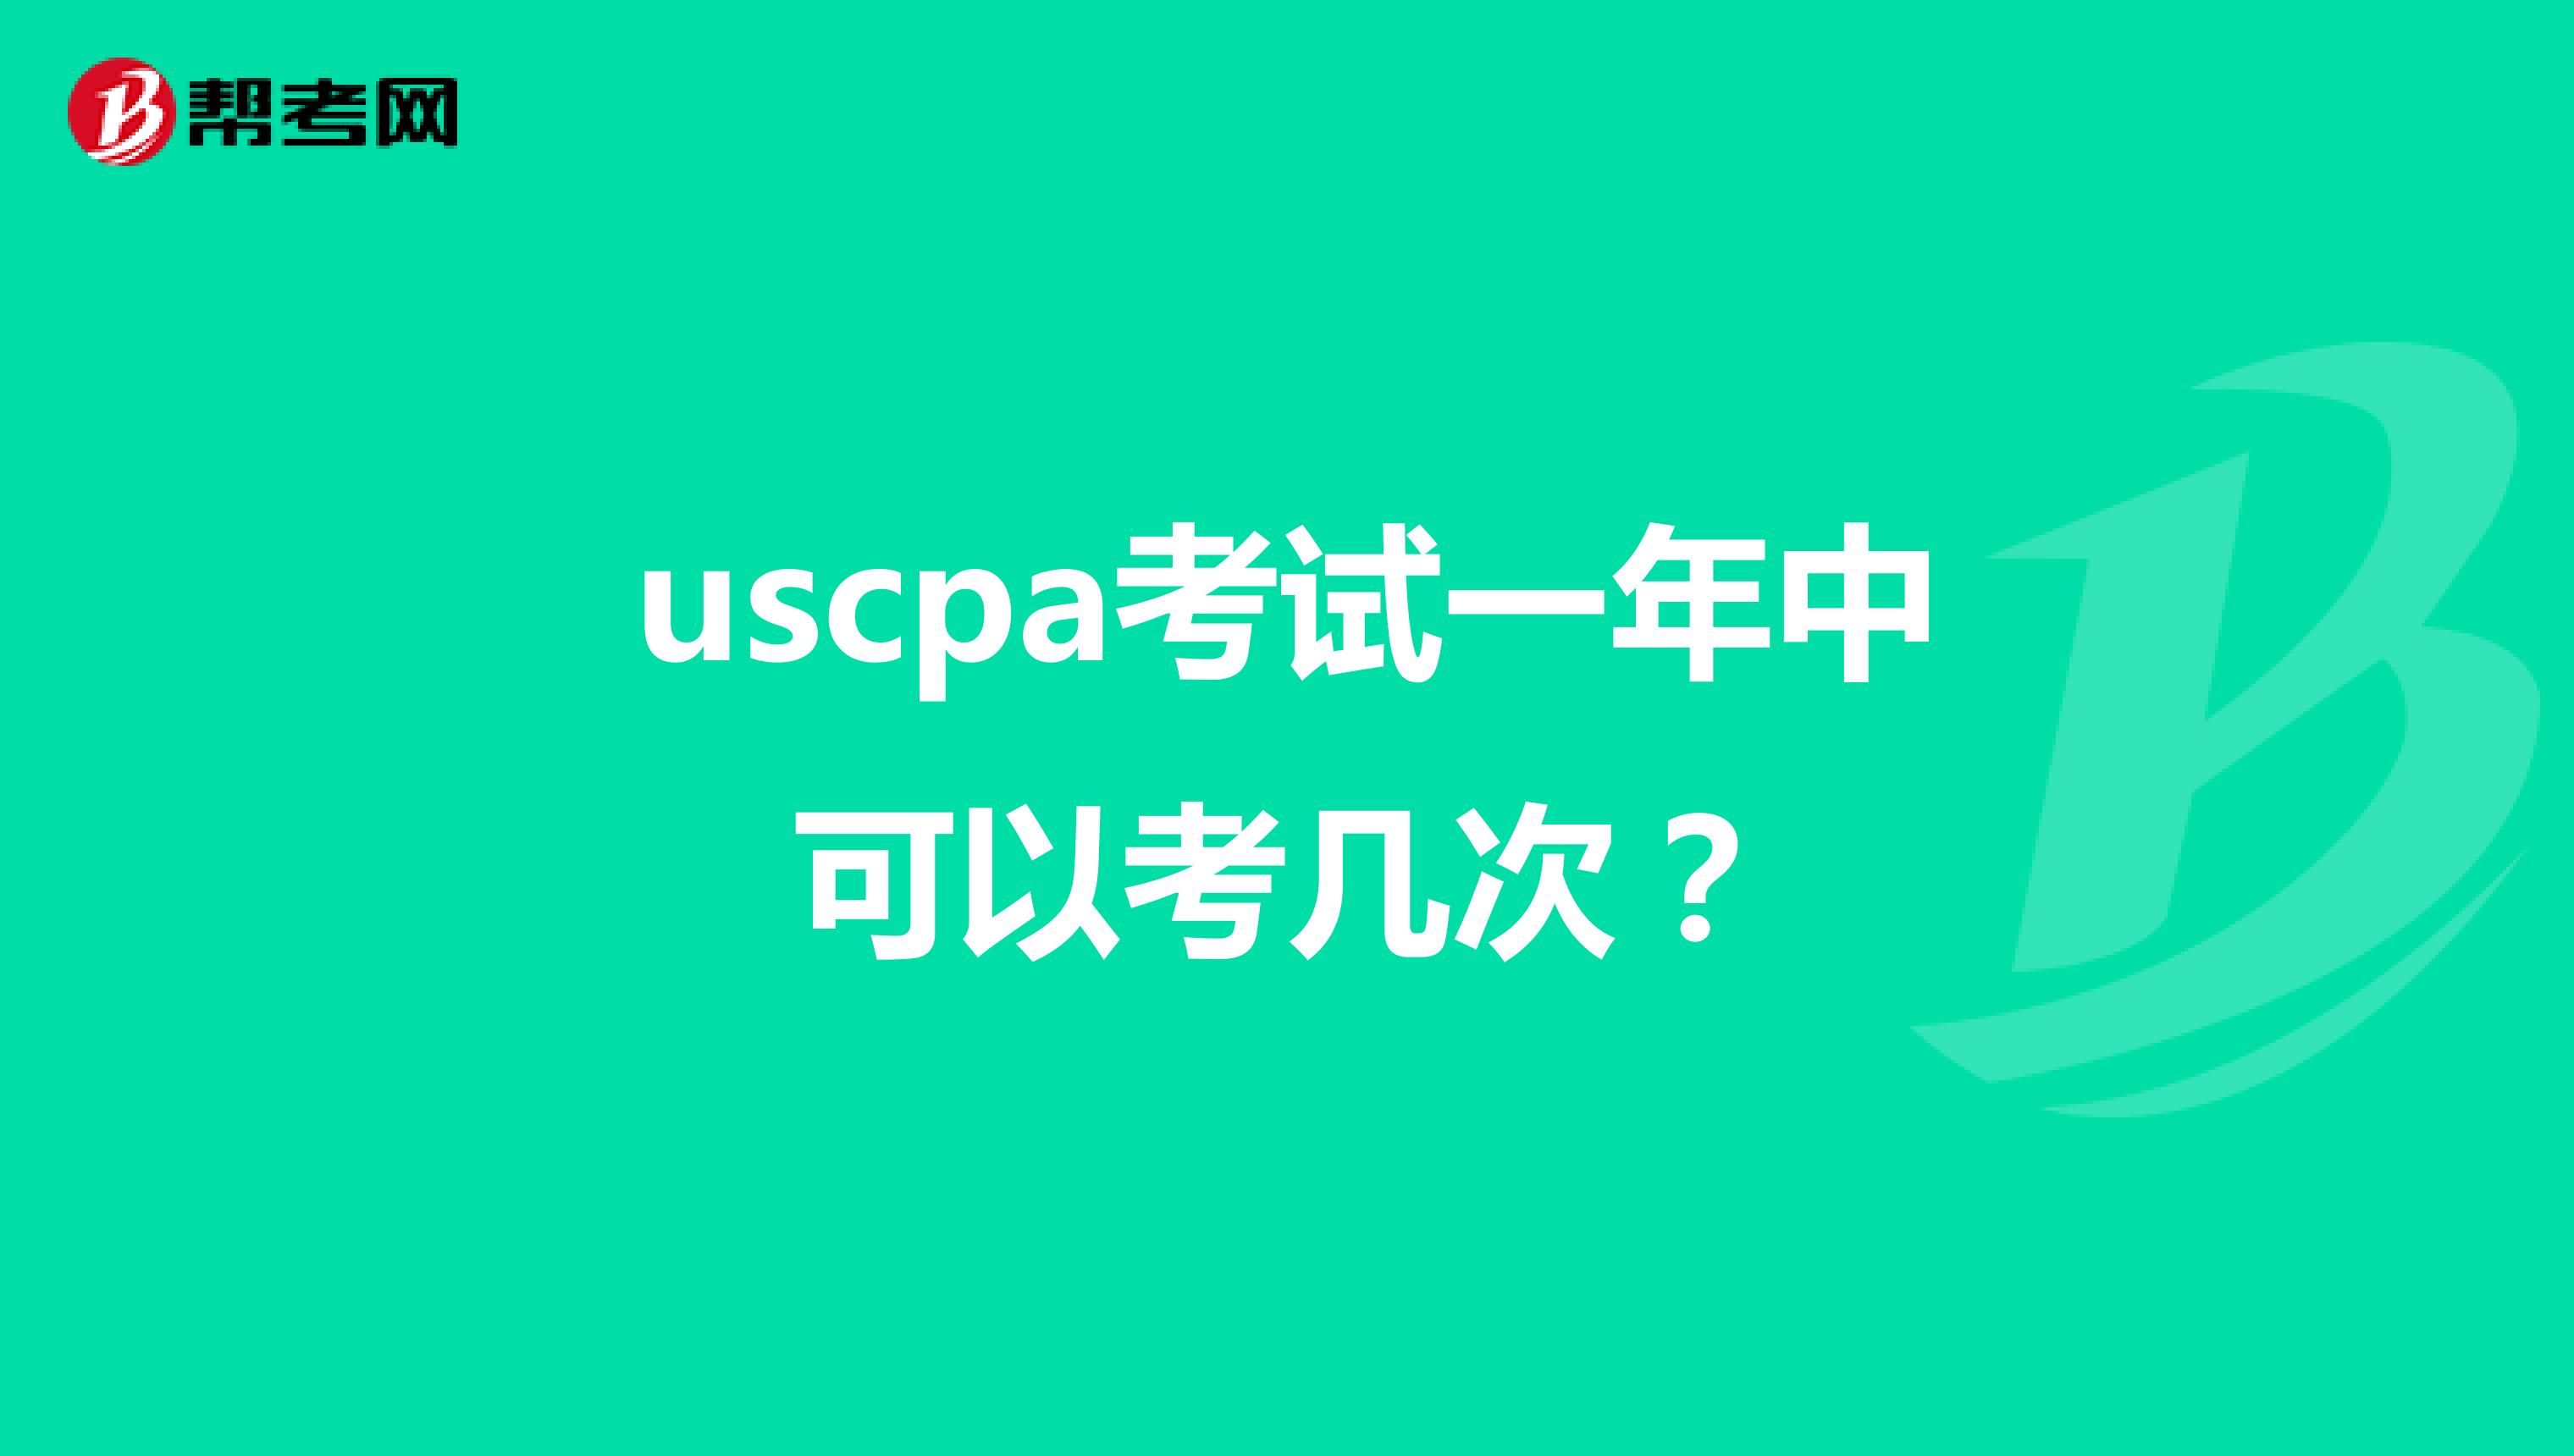 uscpa考试一年中可以考几次？